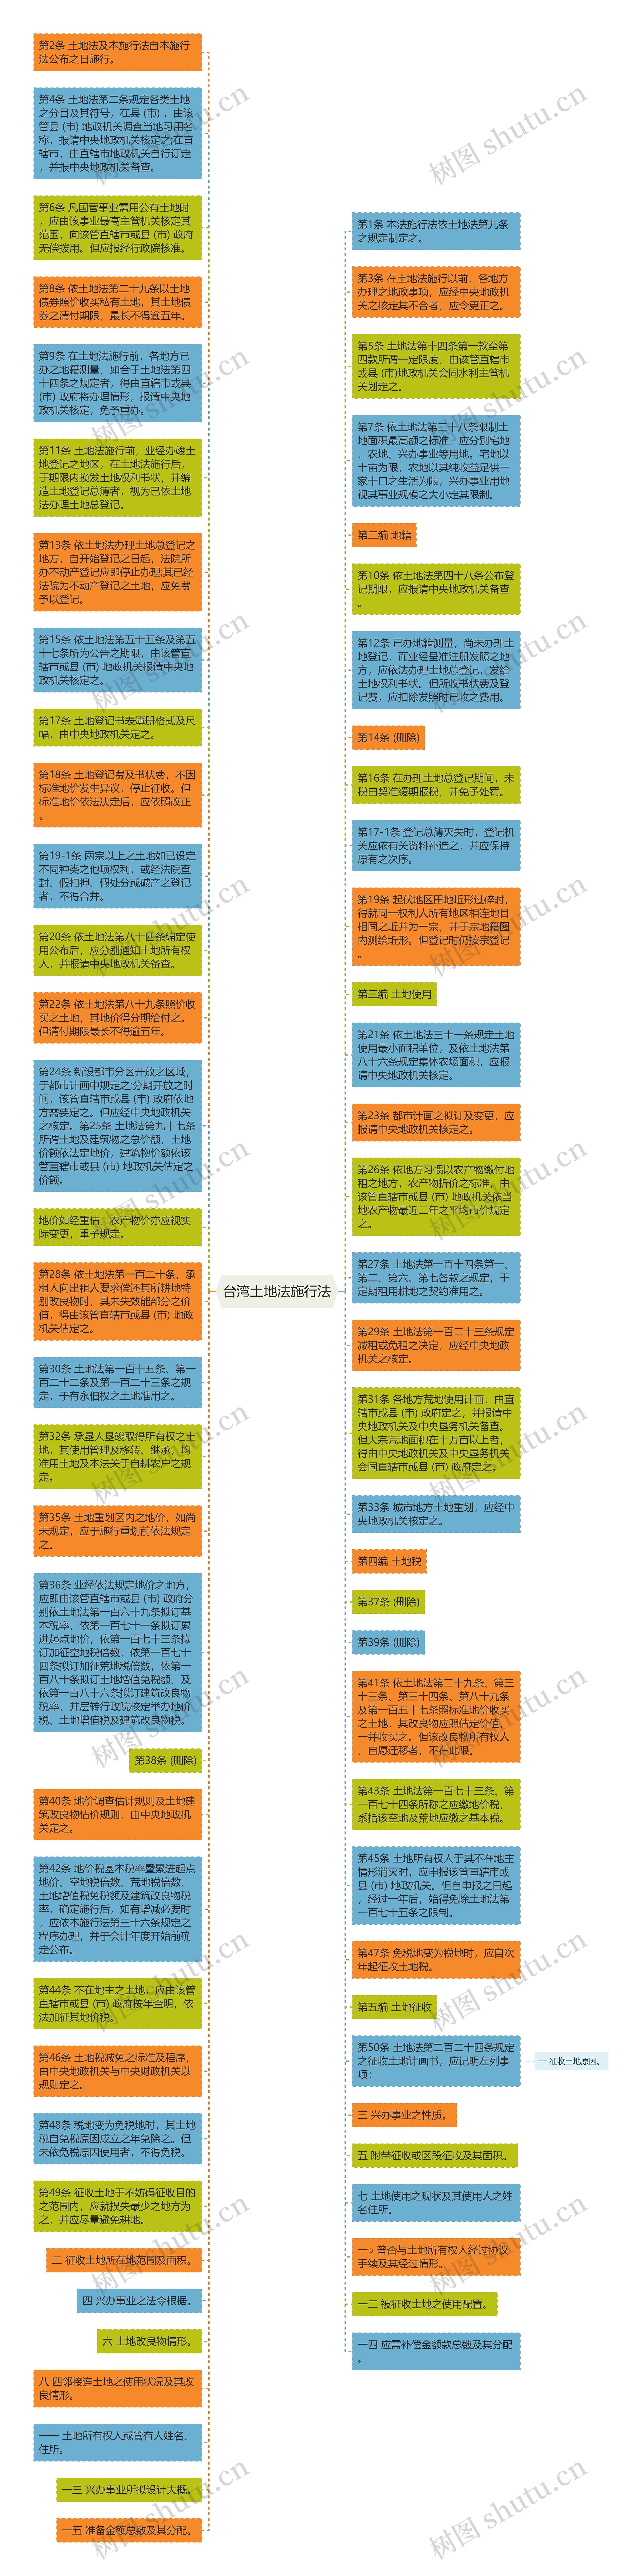 台湾土地法施行法思维导图